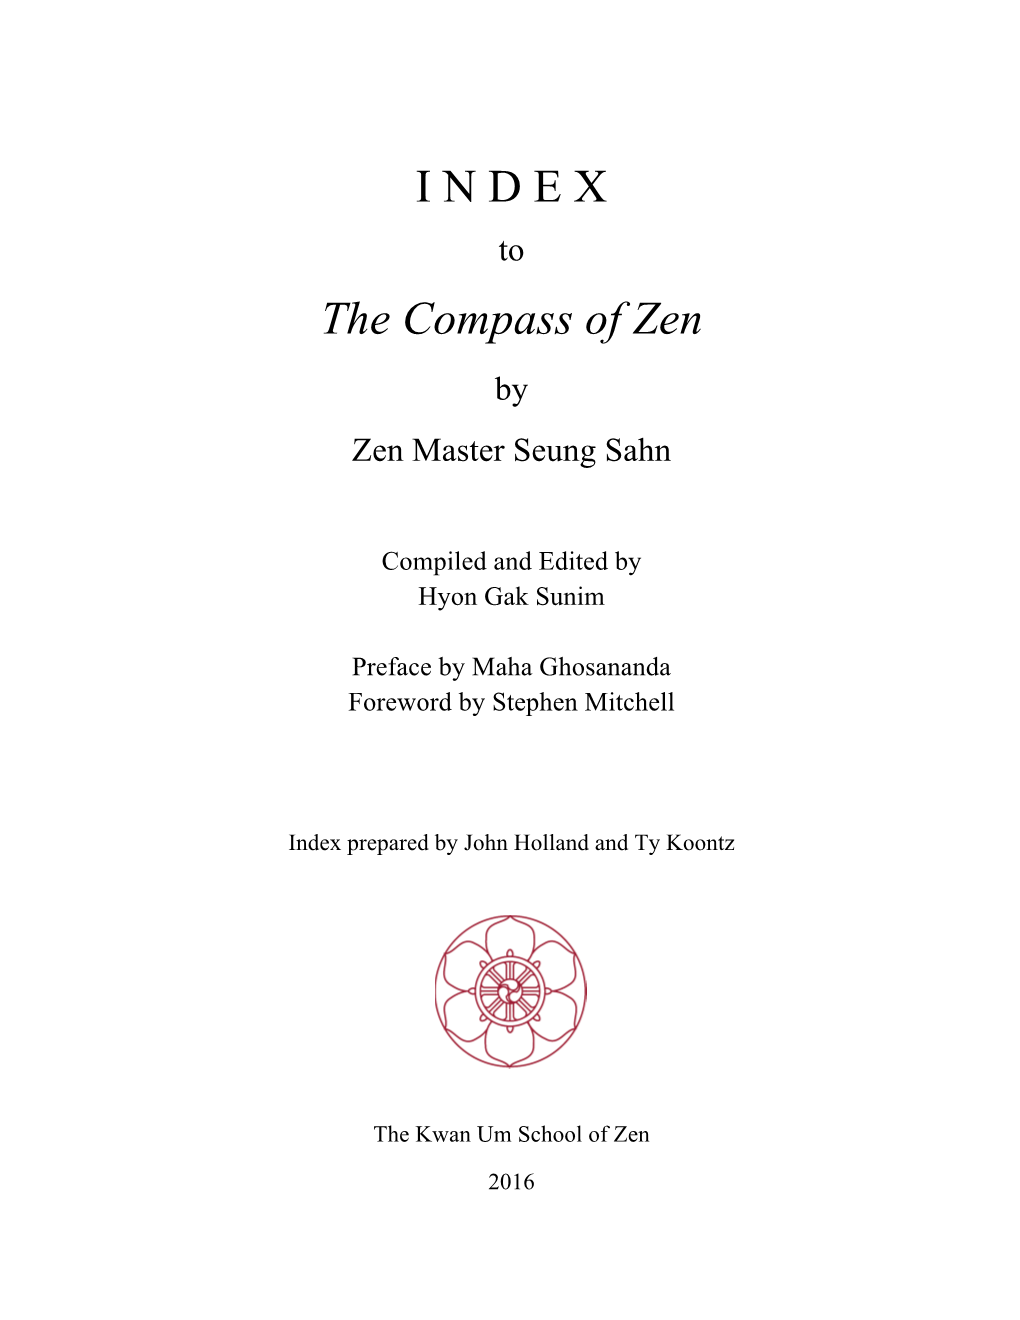 The Compass of Zen by Zen Master Seung Sahn